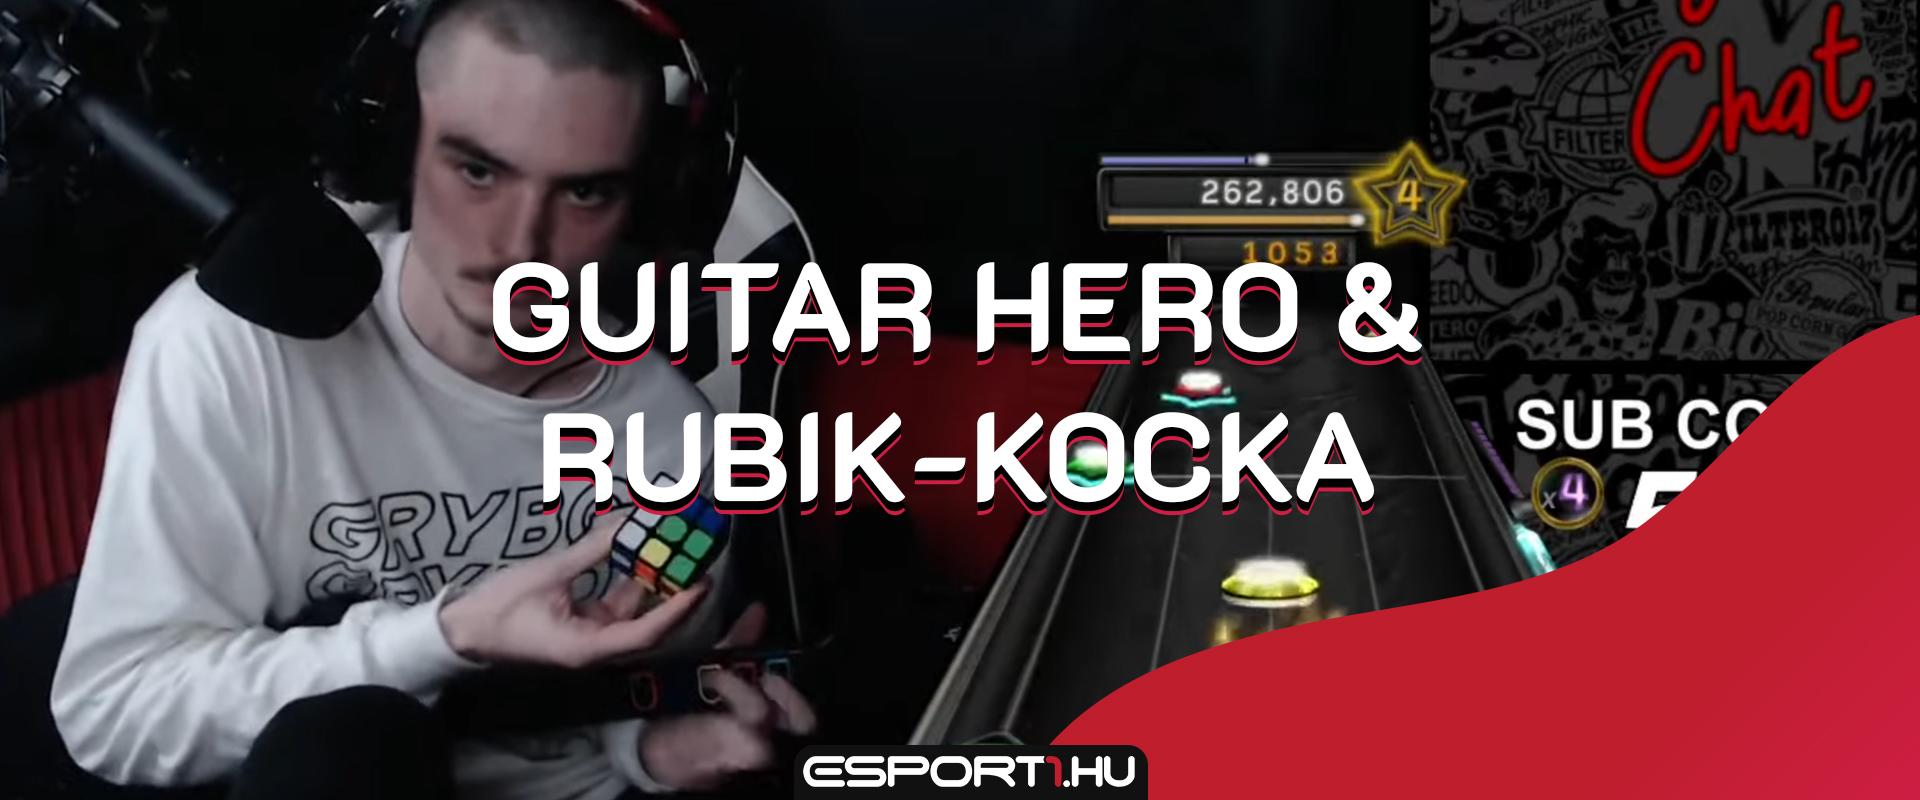 Rubik-kockázás x Guitar Hero: A legnehezebb szám sem akadály